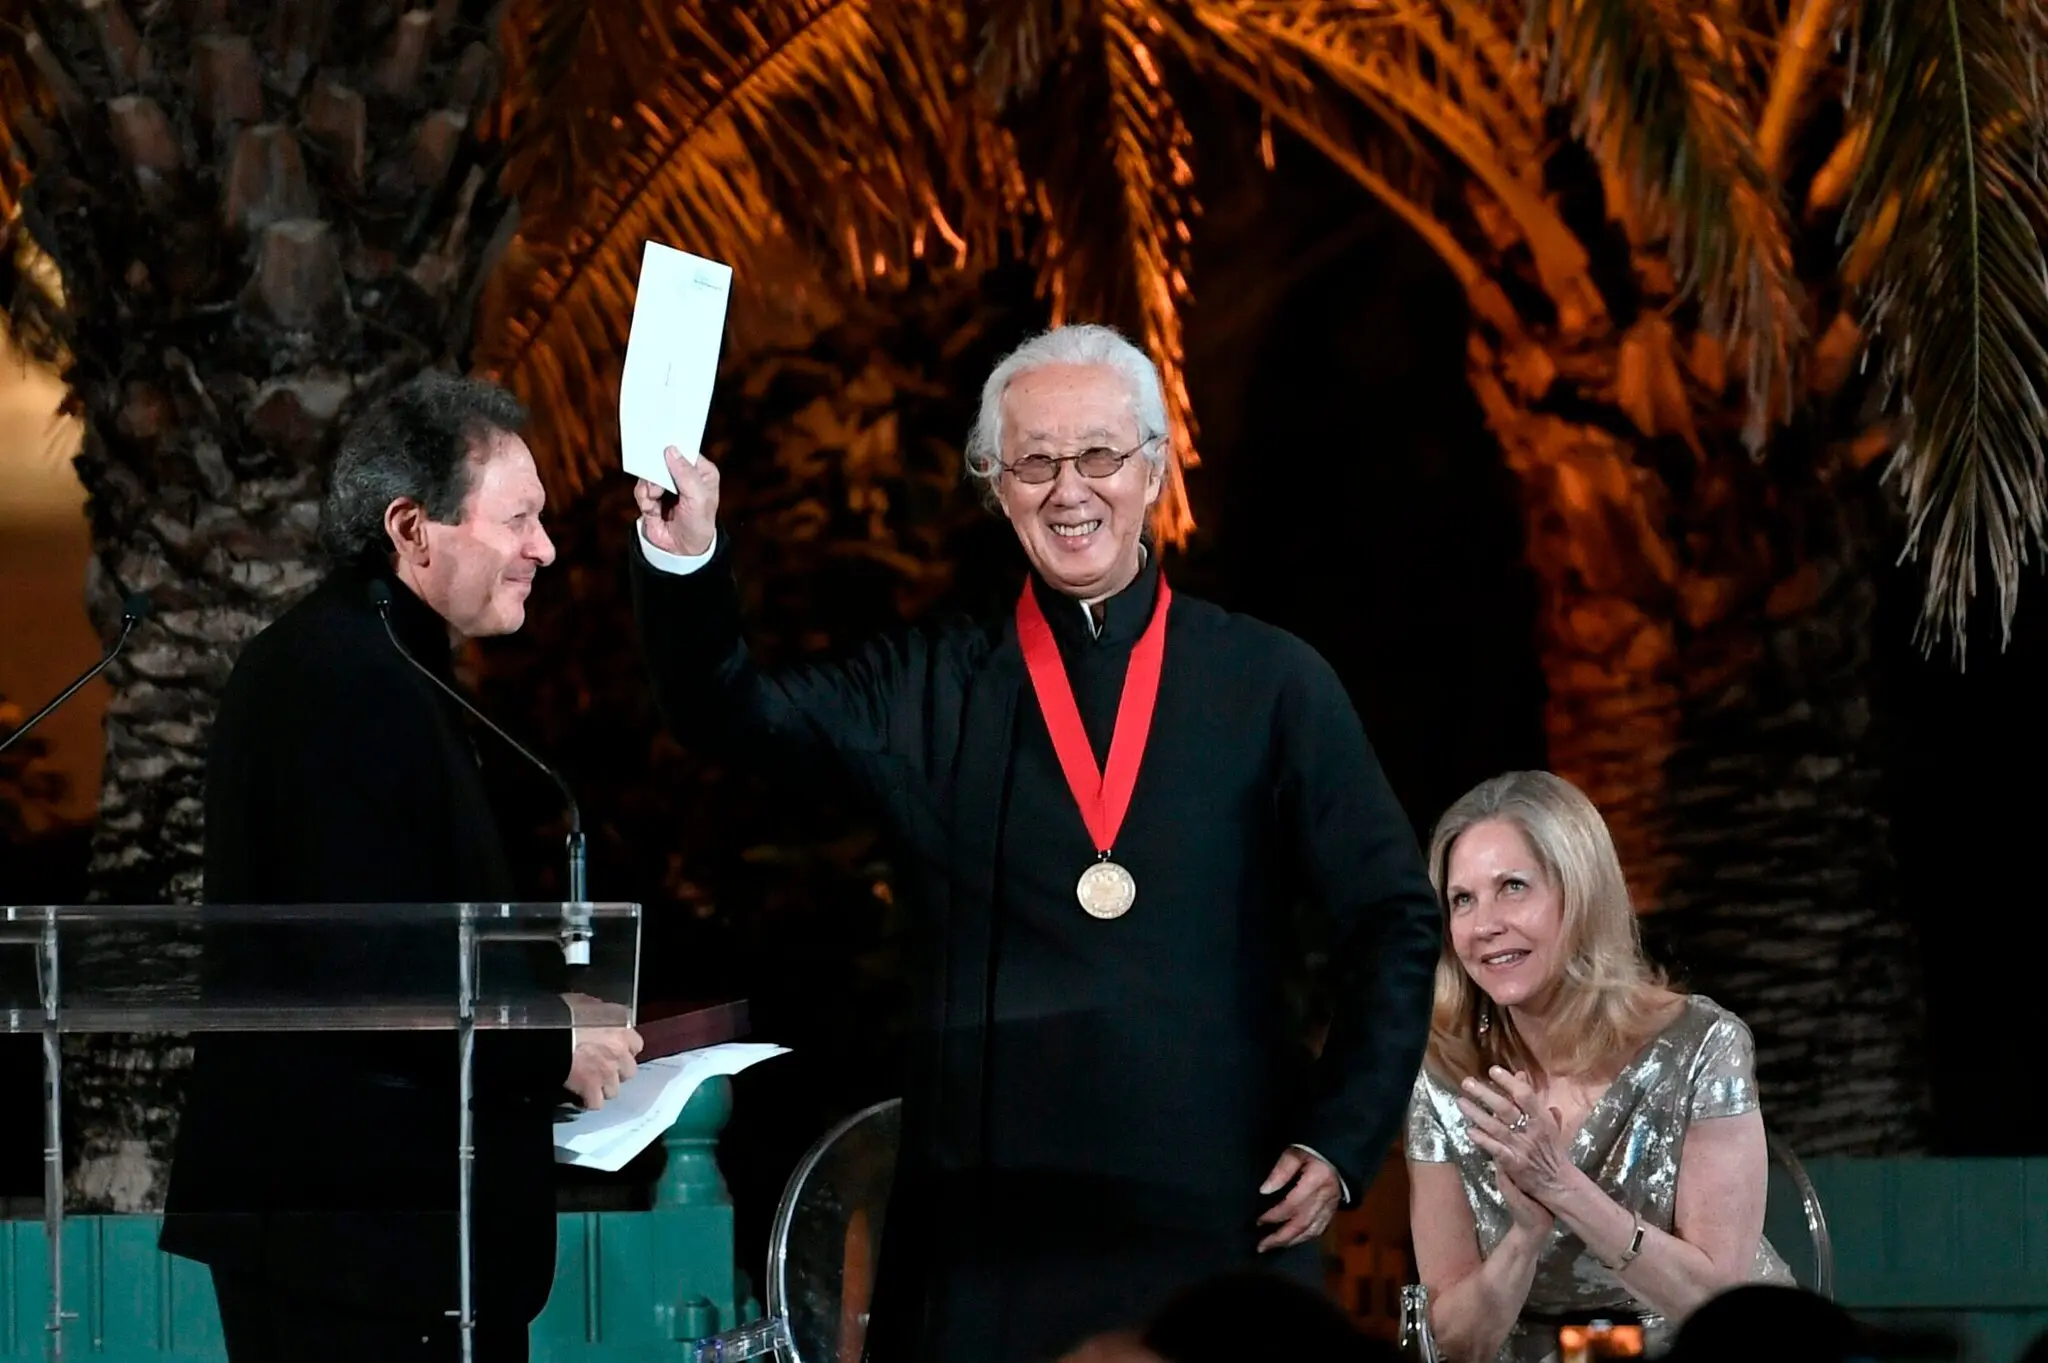 Depois de uma longa e prolífica carreira, Isozaki finalmente recebeu o Prêmio Pritzker em 2019, quando tinha 87 anos.Crédito...Stéphane De Sakutin/Agência France-Presse — Getty Images